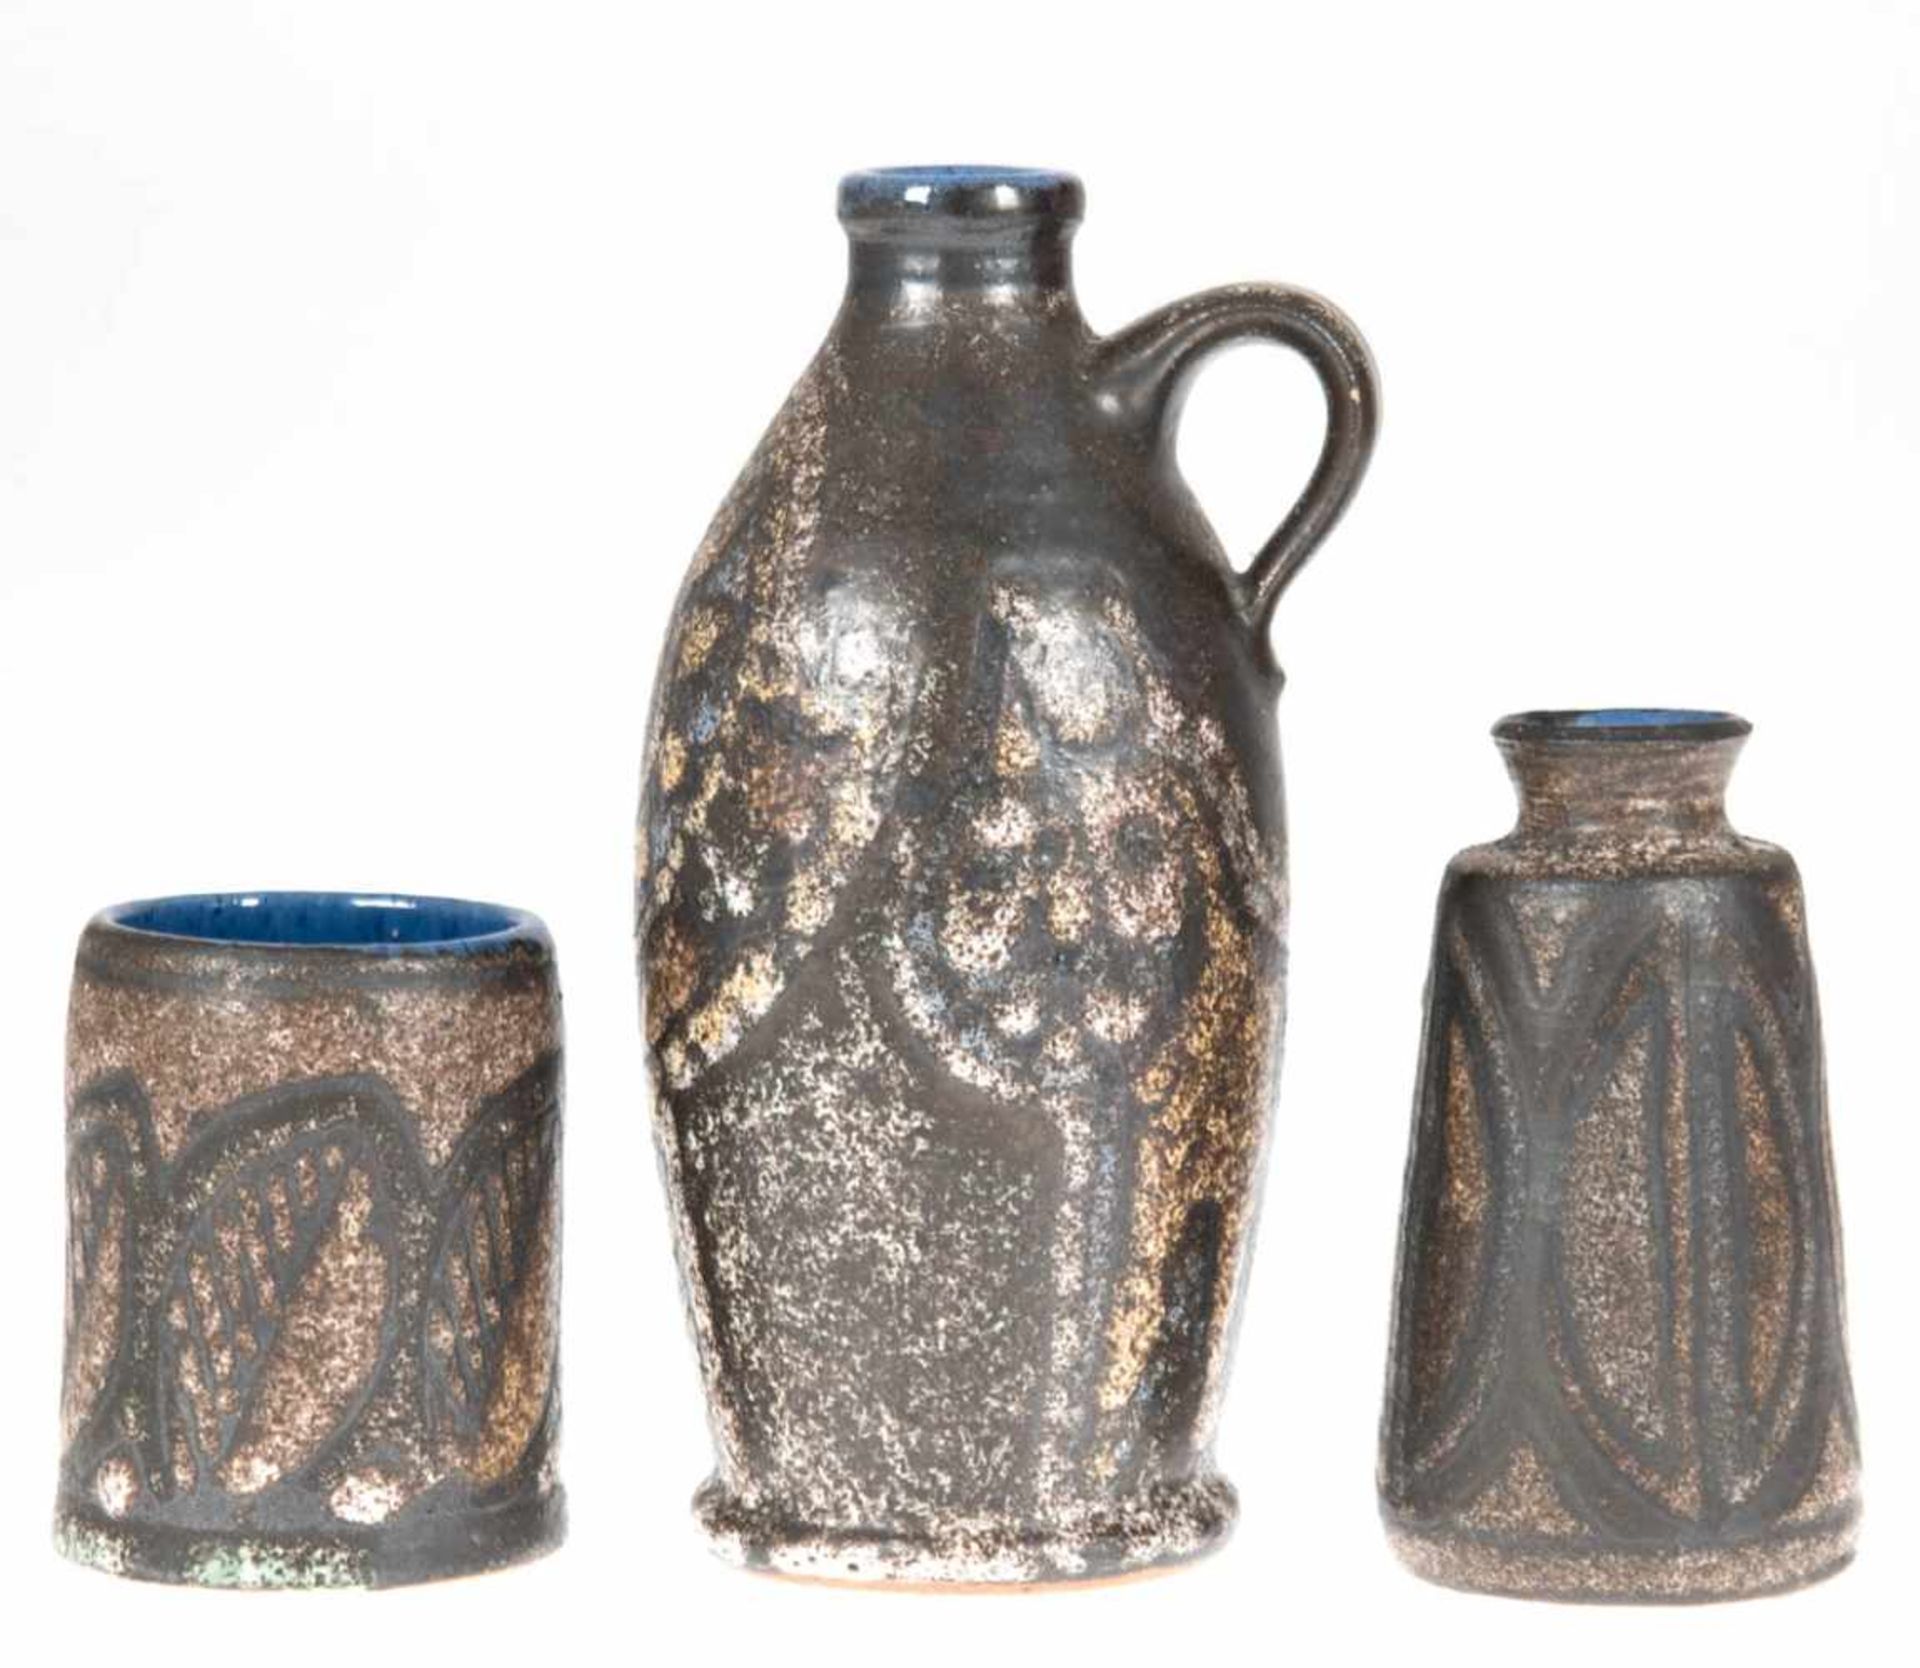 3 Teile Fischland-Keramik: Krug, Vase und Becher, innen blau und außen grau/braunglasiert, H. 19 cm,